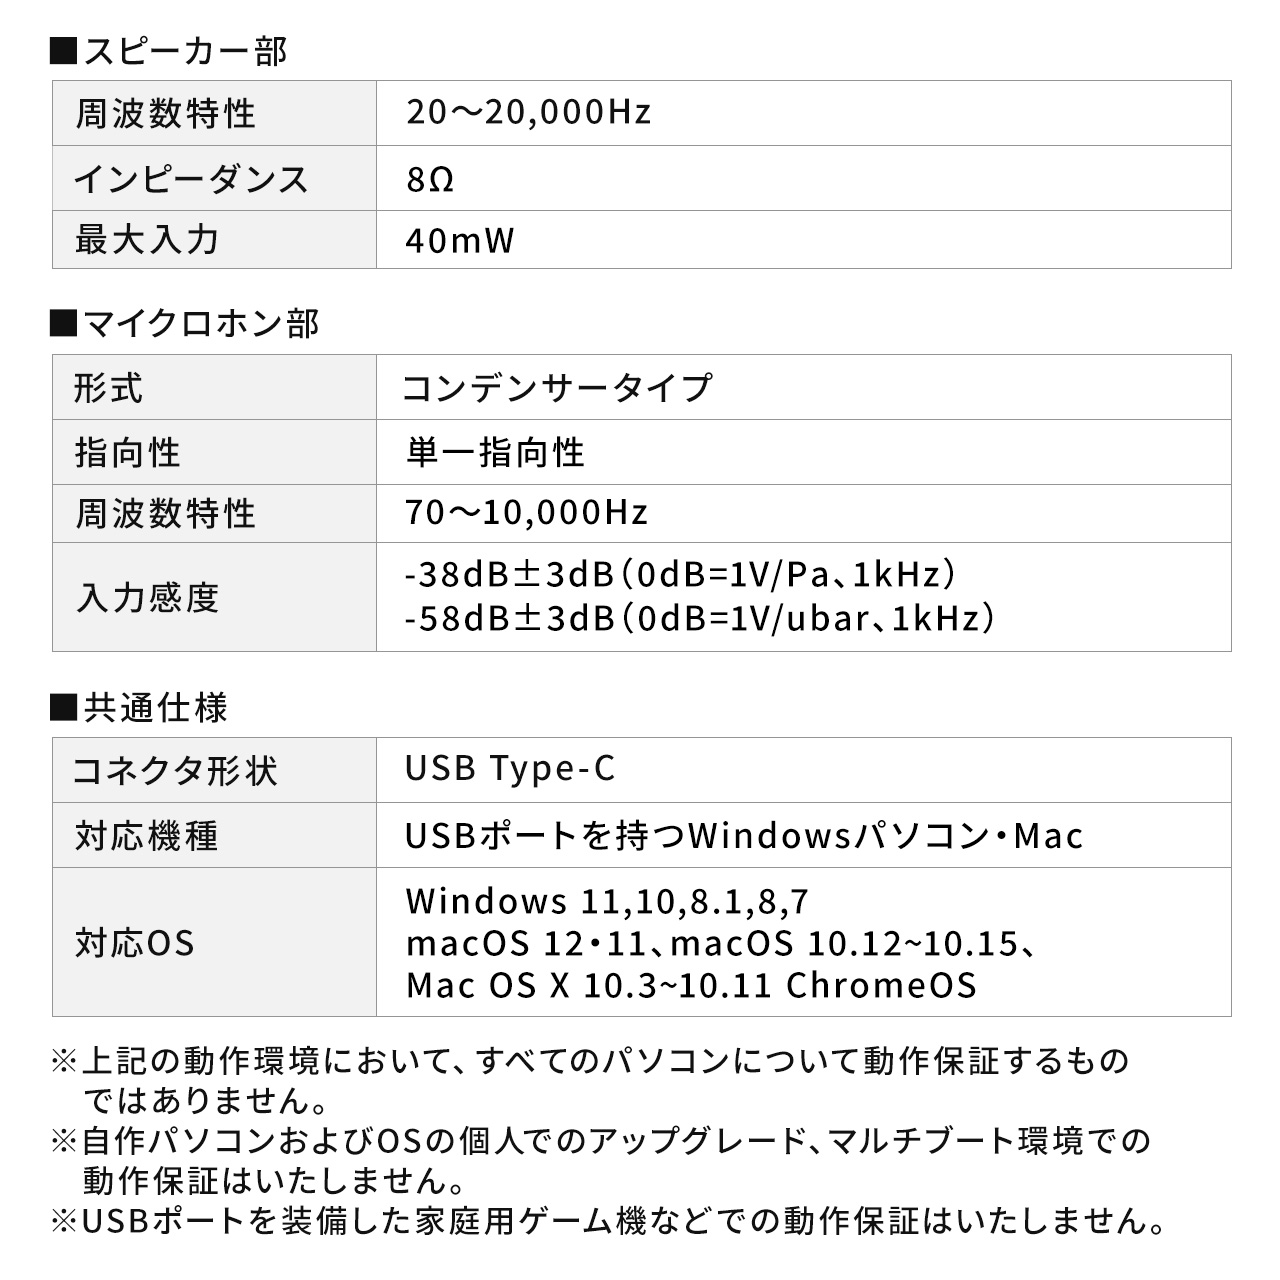 USBnhZbg USBb Type-C ʒ }CN~[g\ y P[u2 Zoom Skype Teams Webex Windows Mac iPad Surface Pro 400-HS046